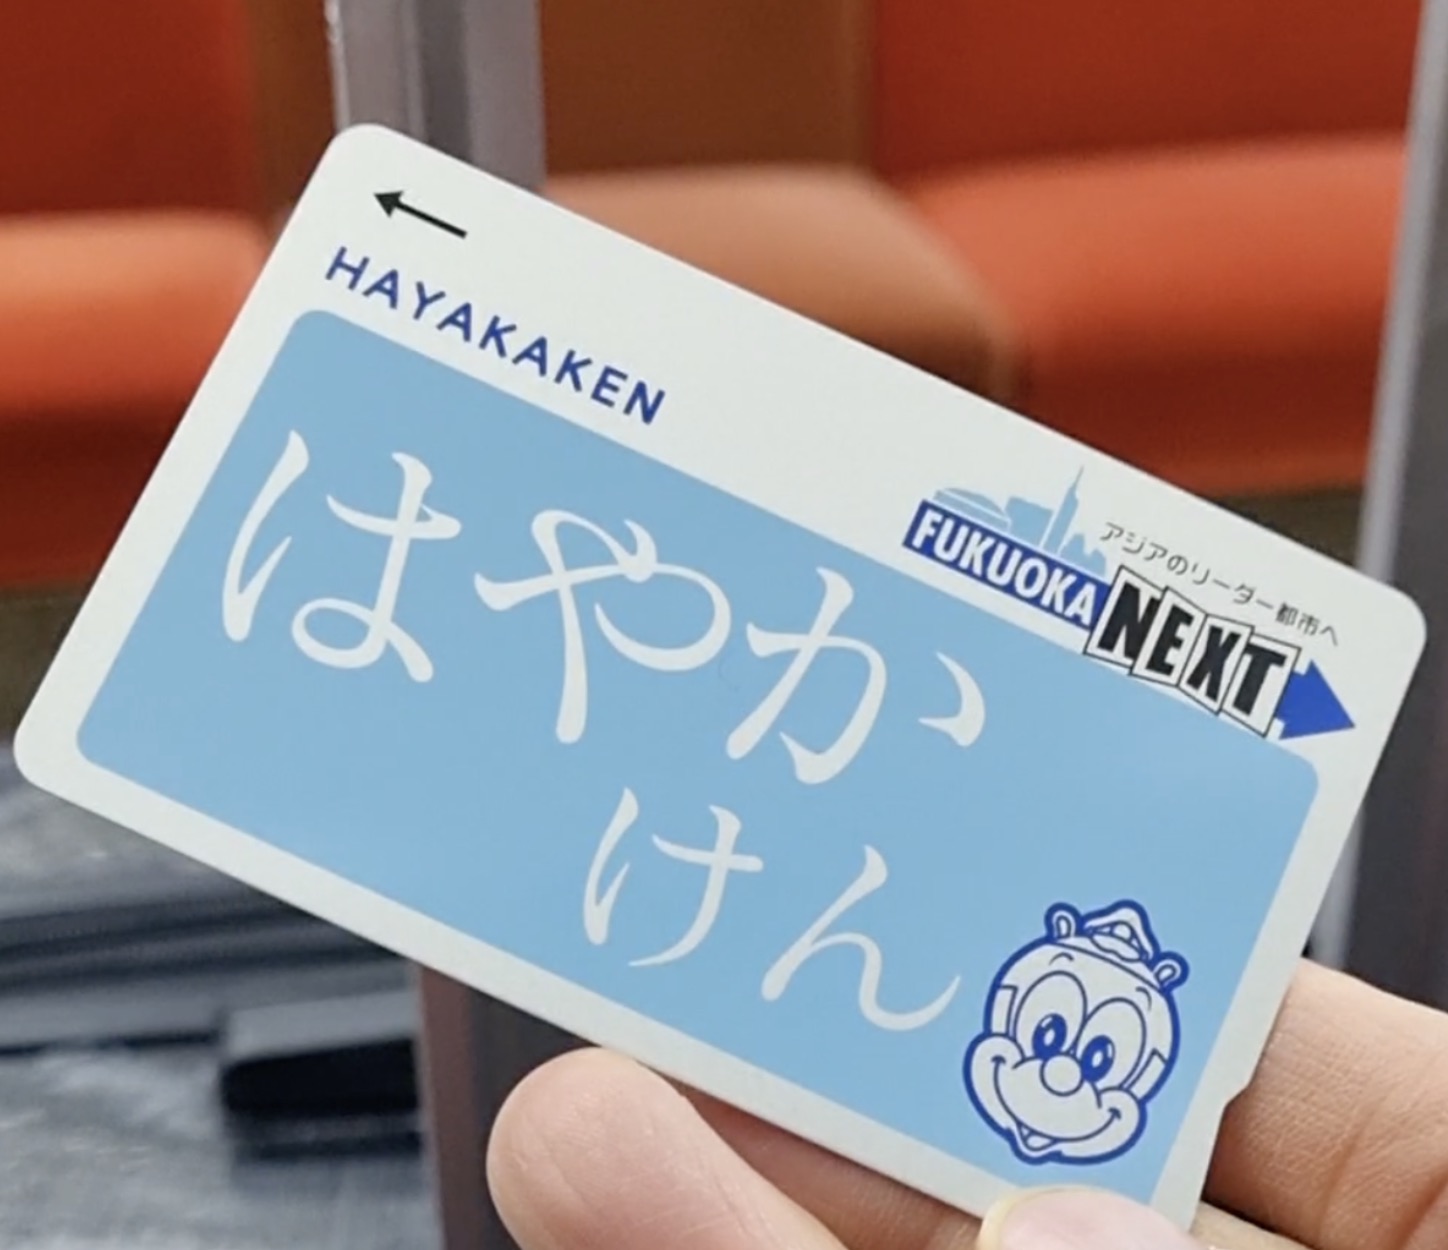 하야카켄 교통카드